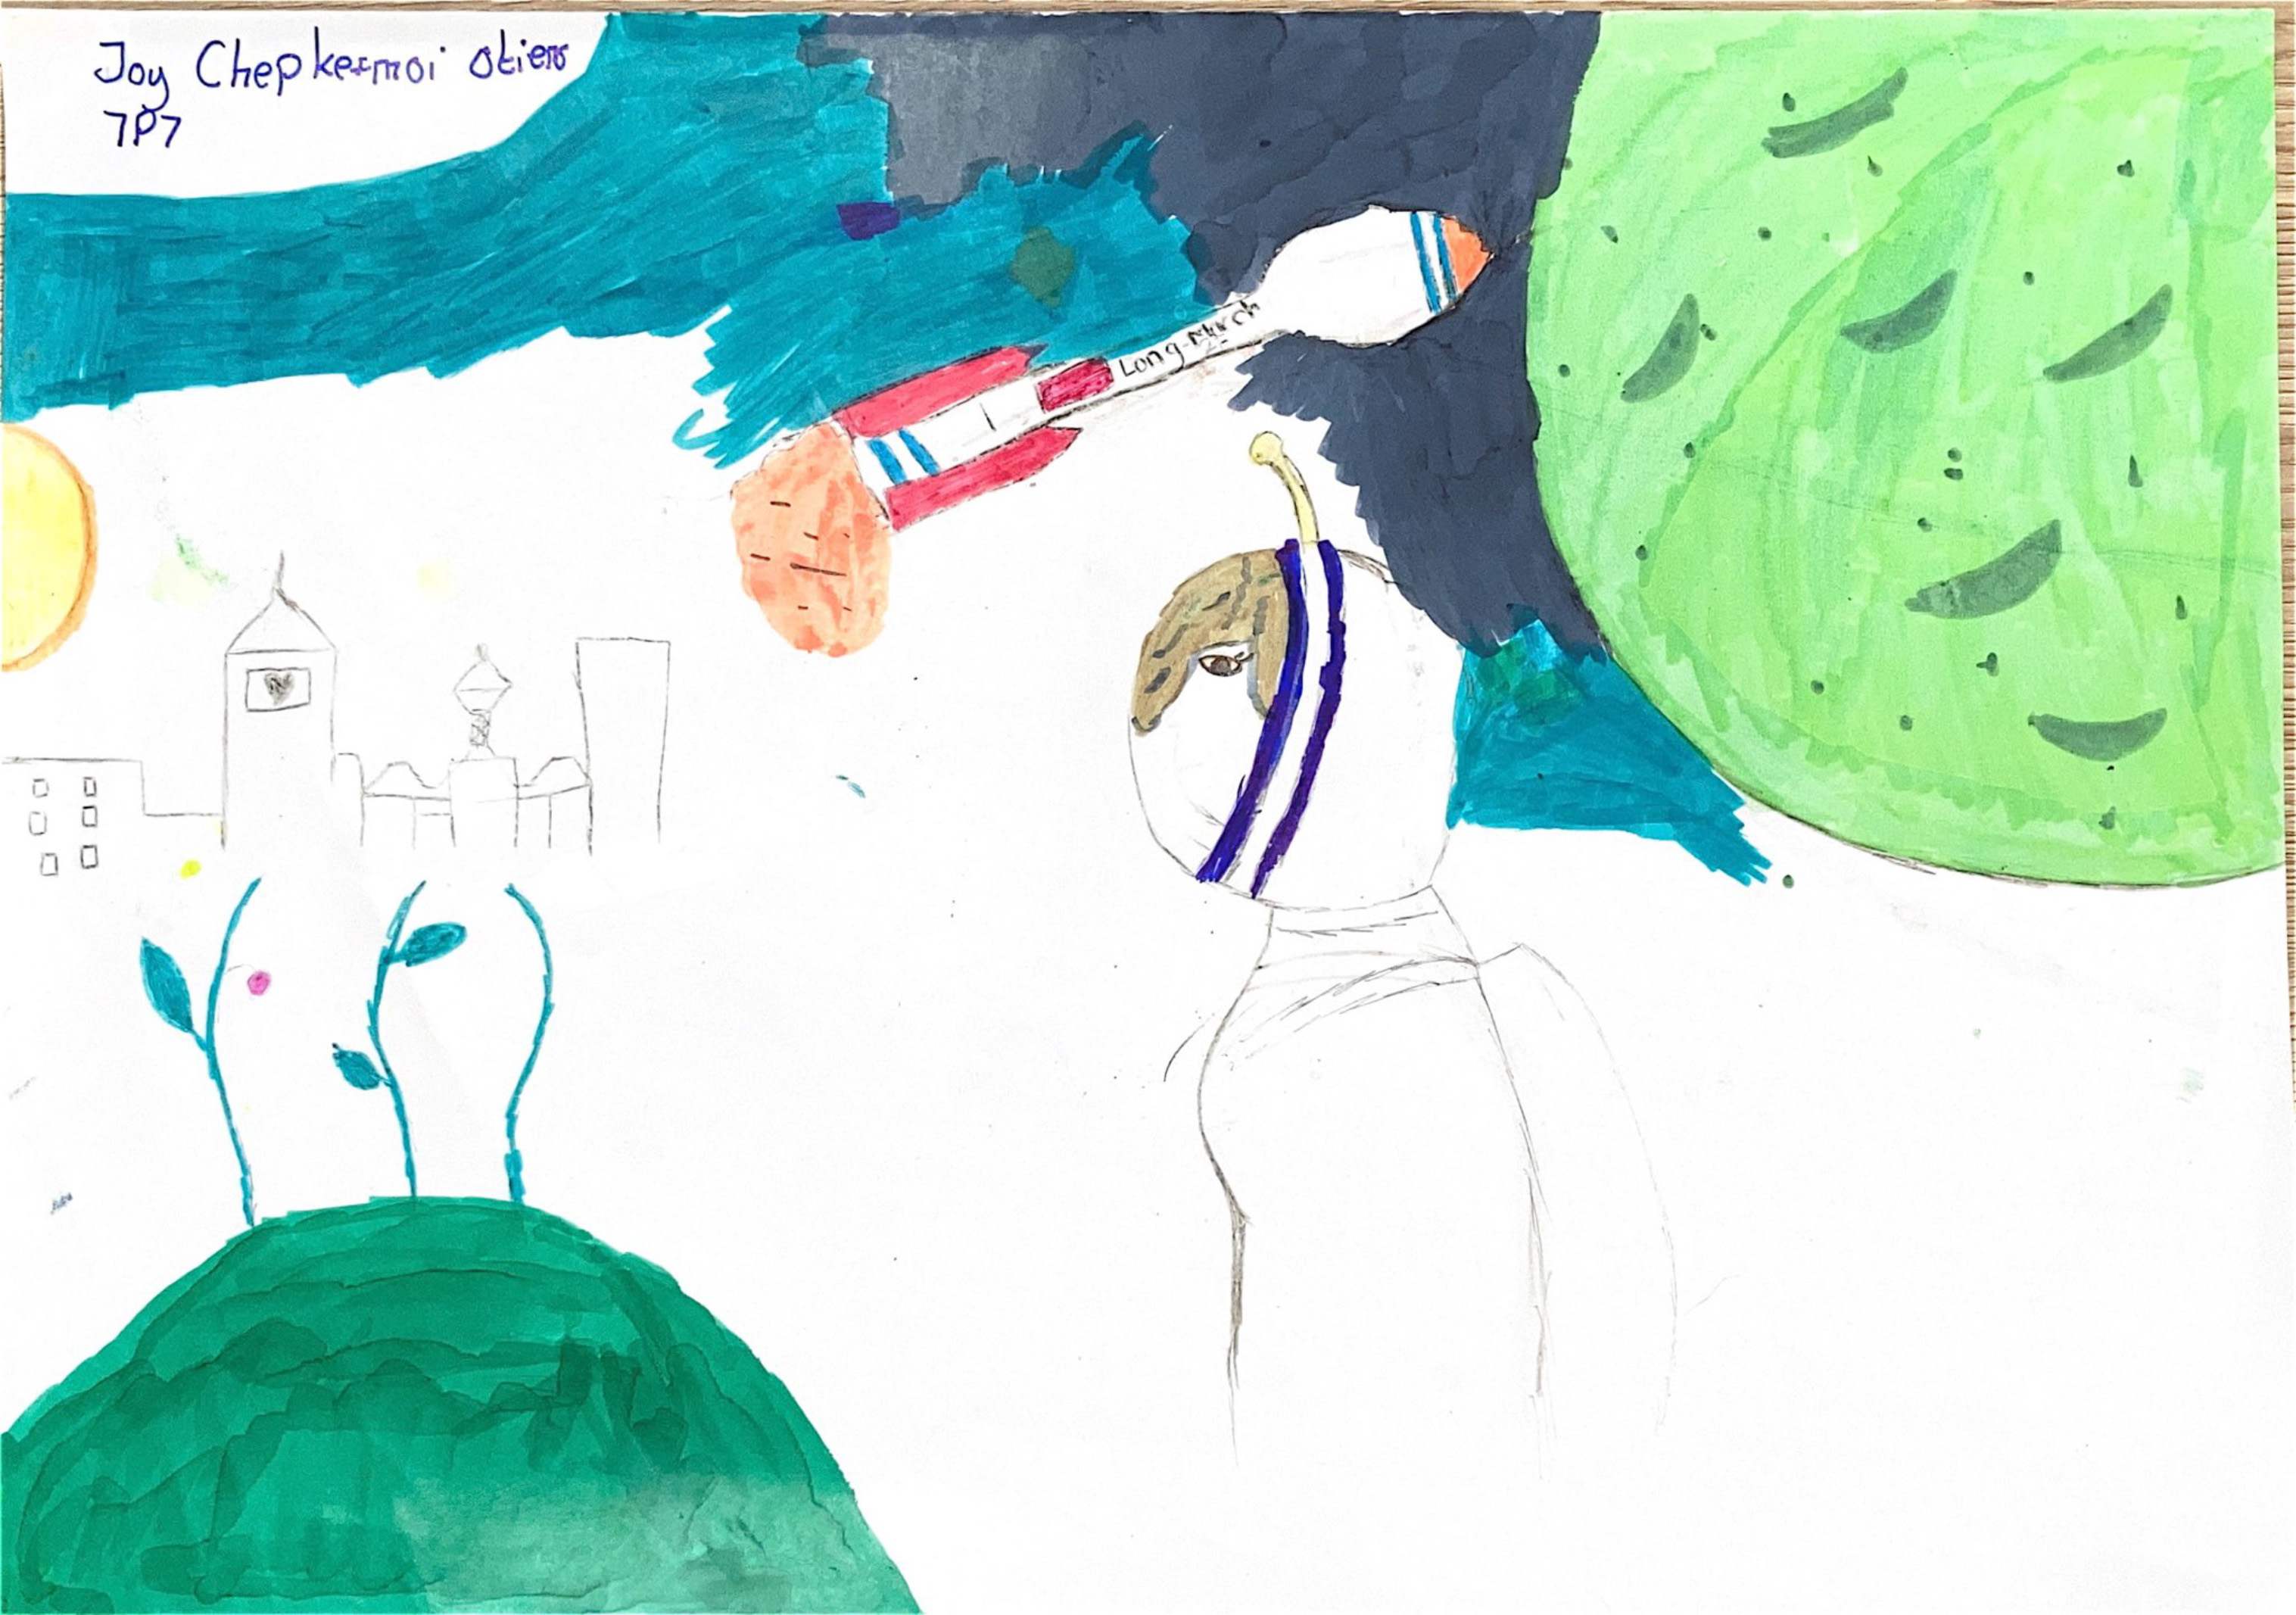 航天日绘画作品《蓝色太空，绿色星球》,肯尼亚乔伊·切普克莫伊（Joy Chepkemoi）